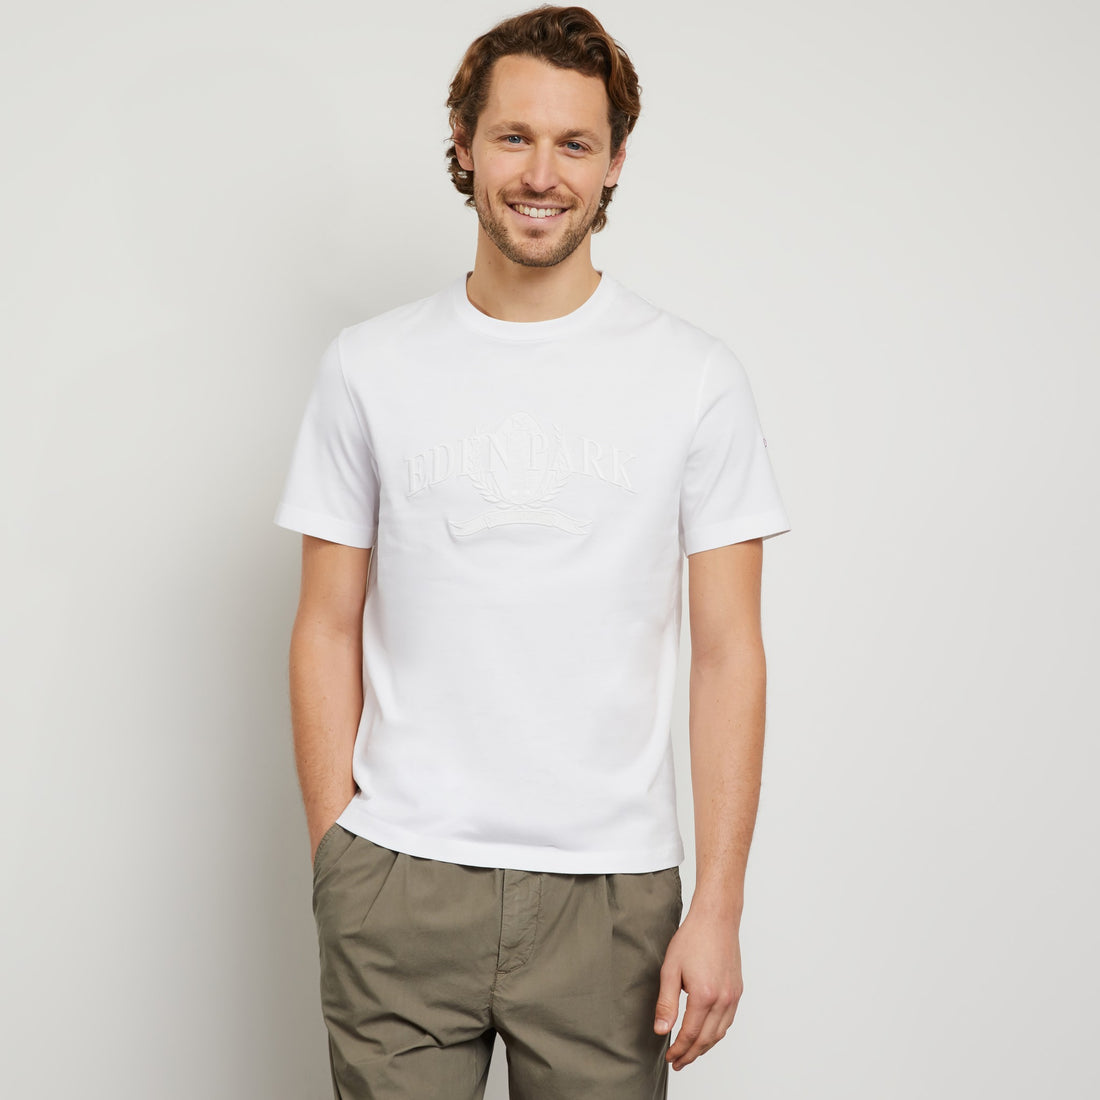 White Short-Sleeved T-Shirt